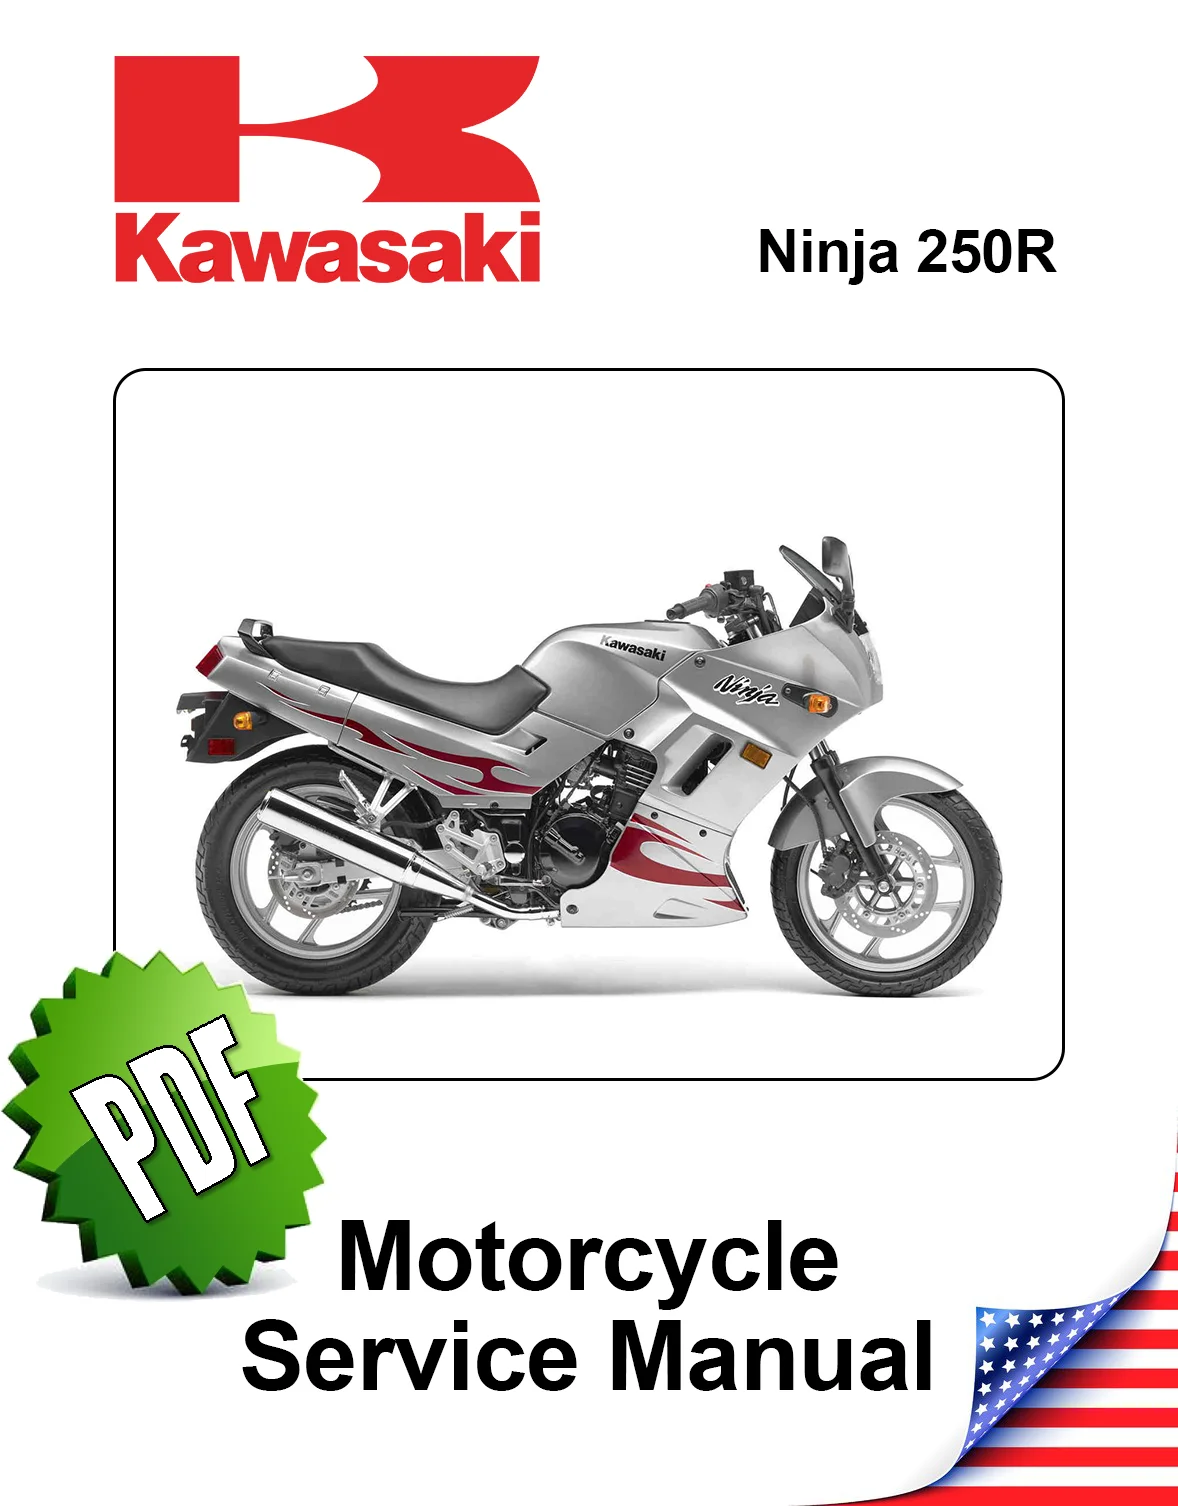 Kawasaki Ninja 250R models 2008 to 2012 original motorcycle manufacturer's PDF repair manual download